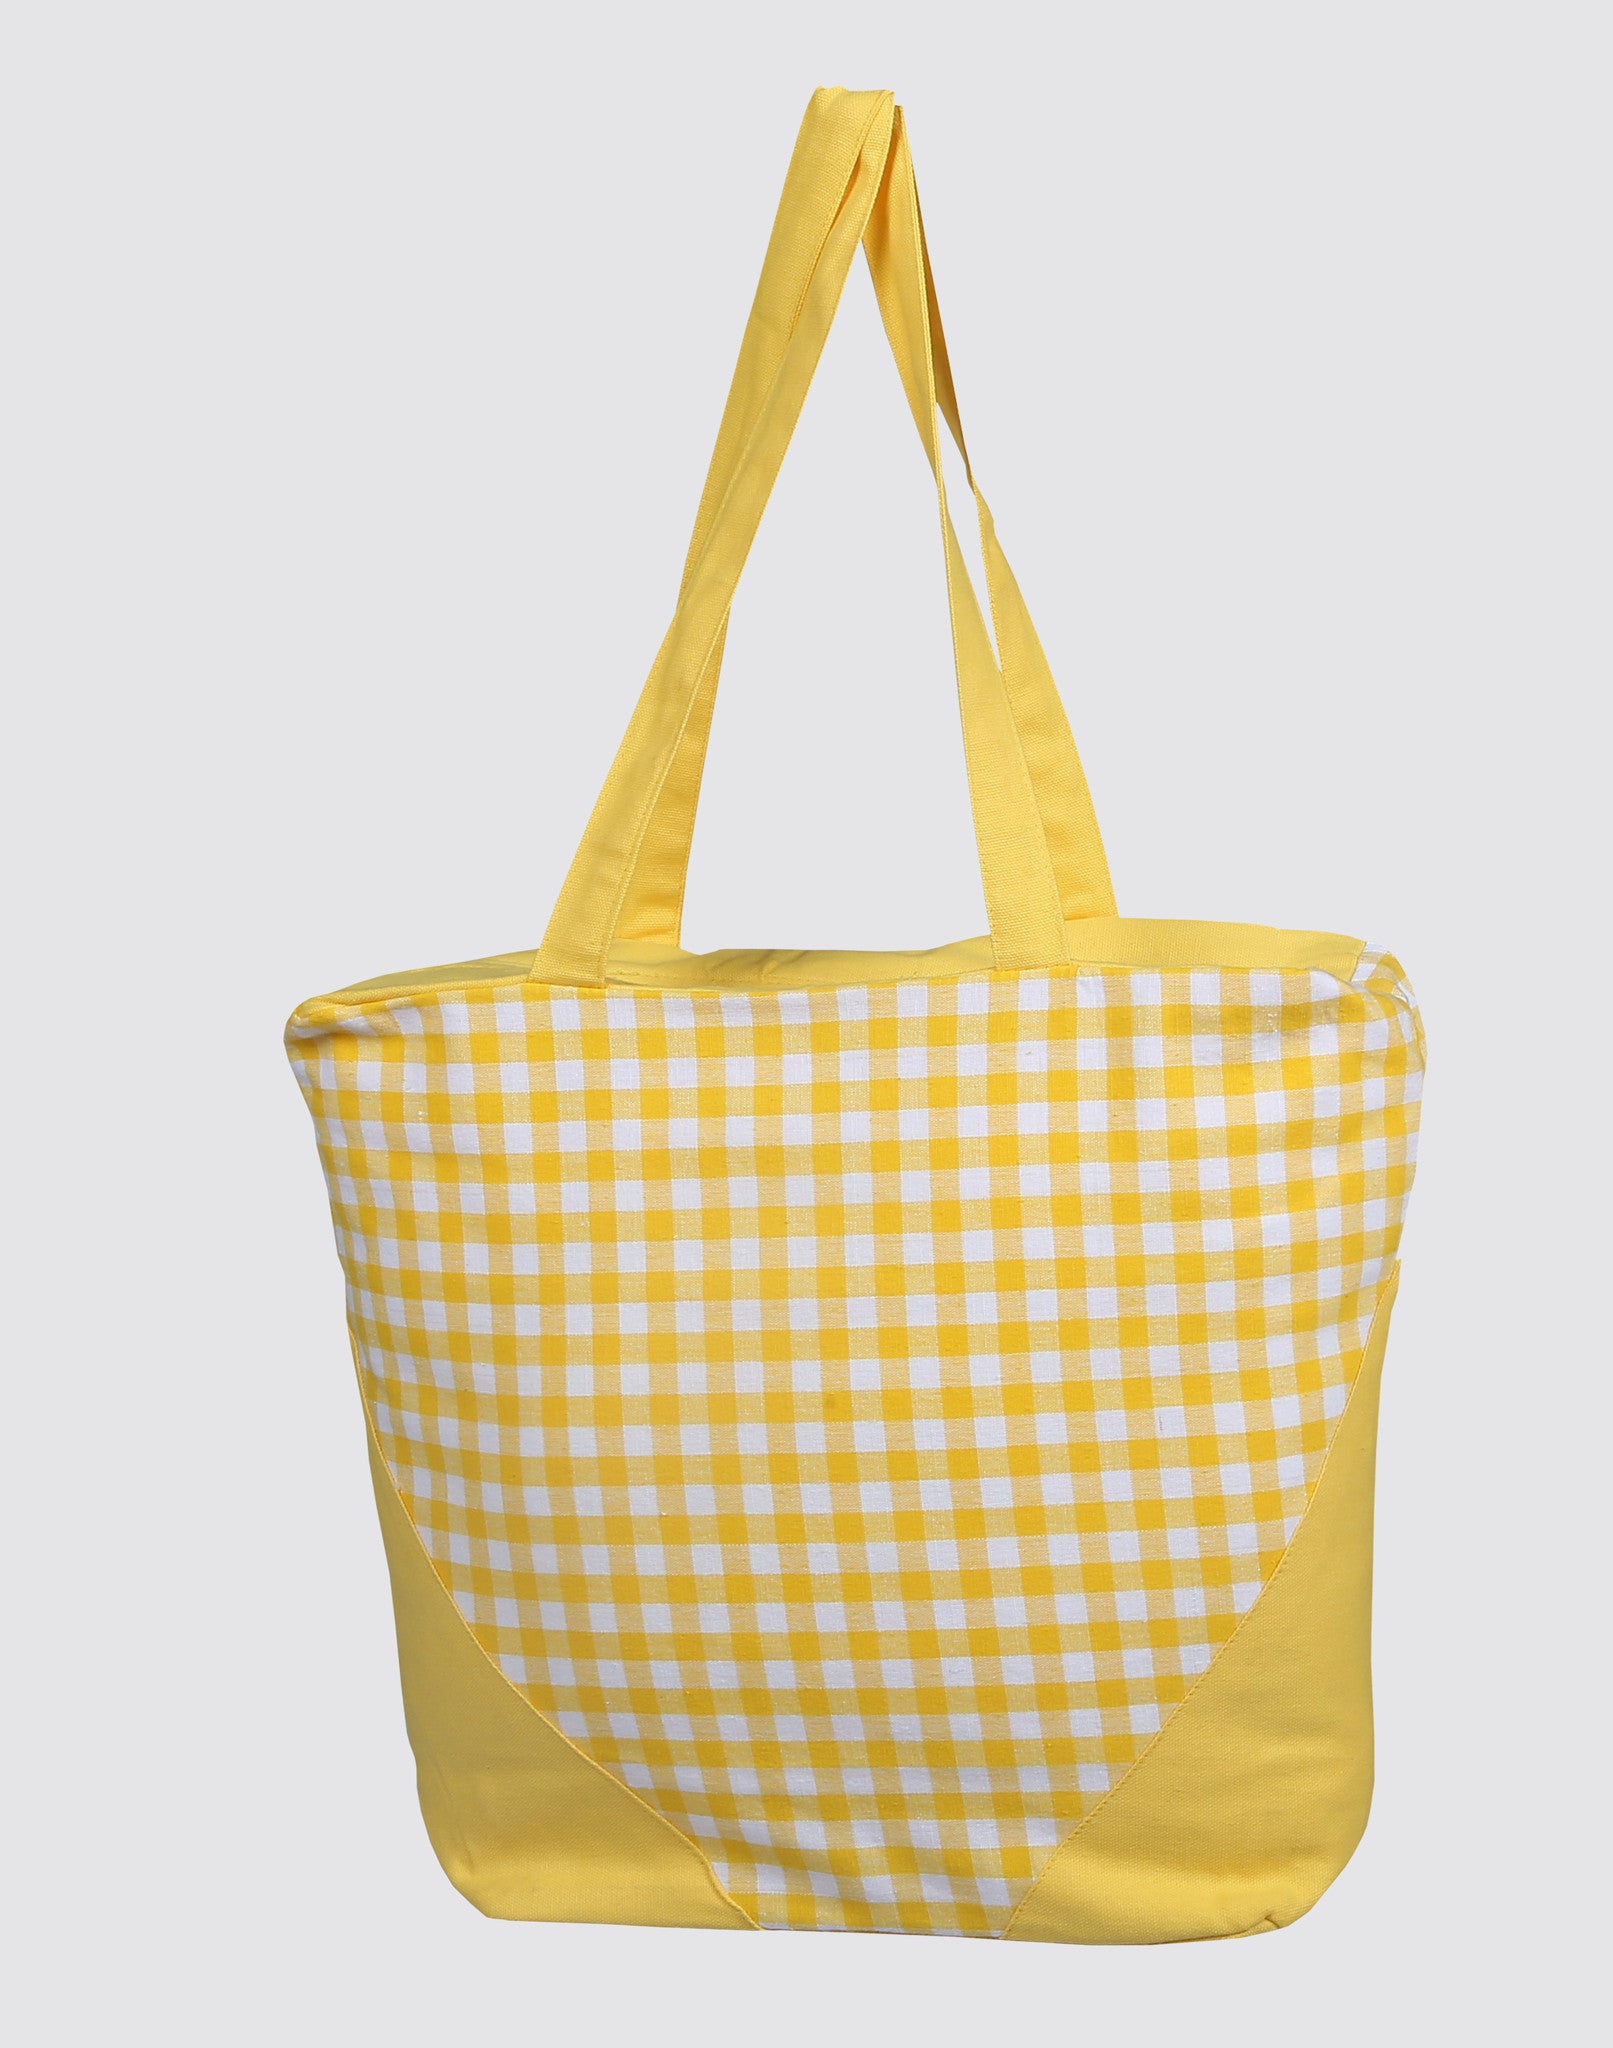 Handbag - Gingham Check Yellow